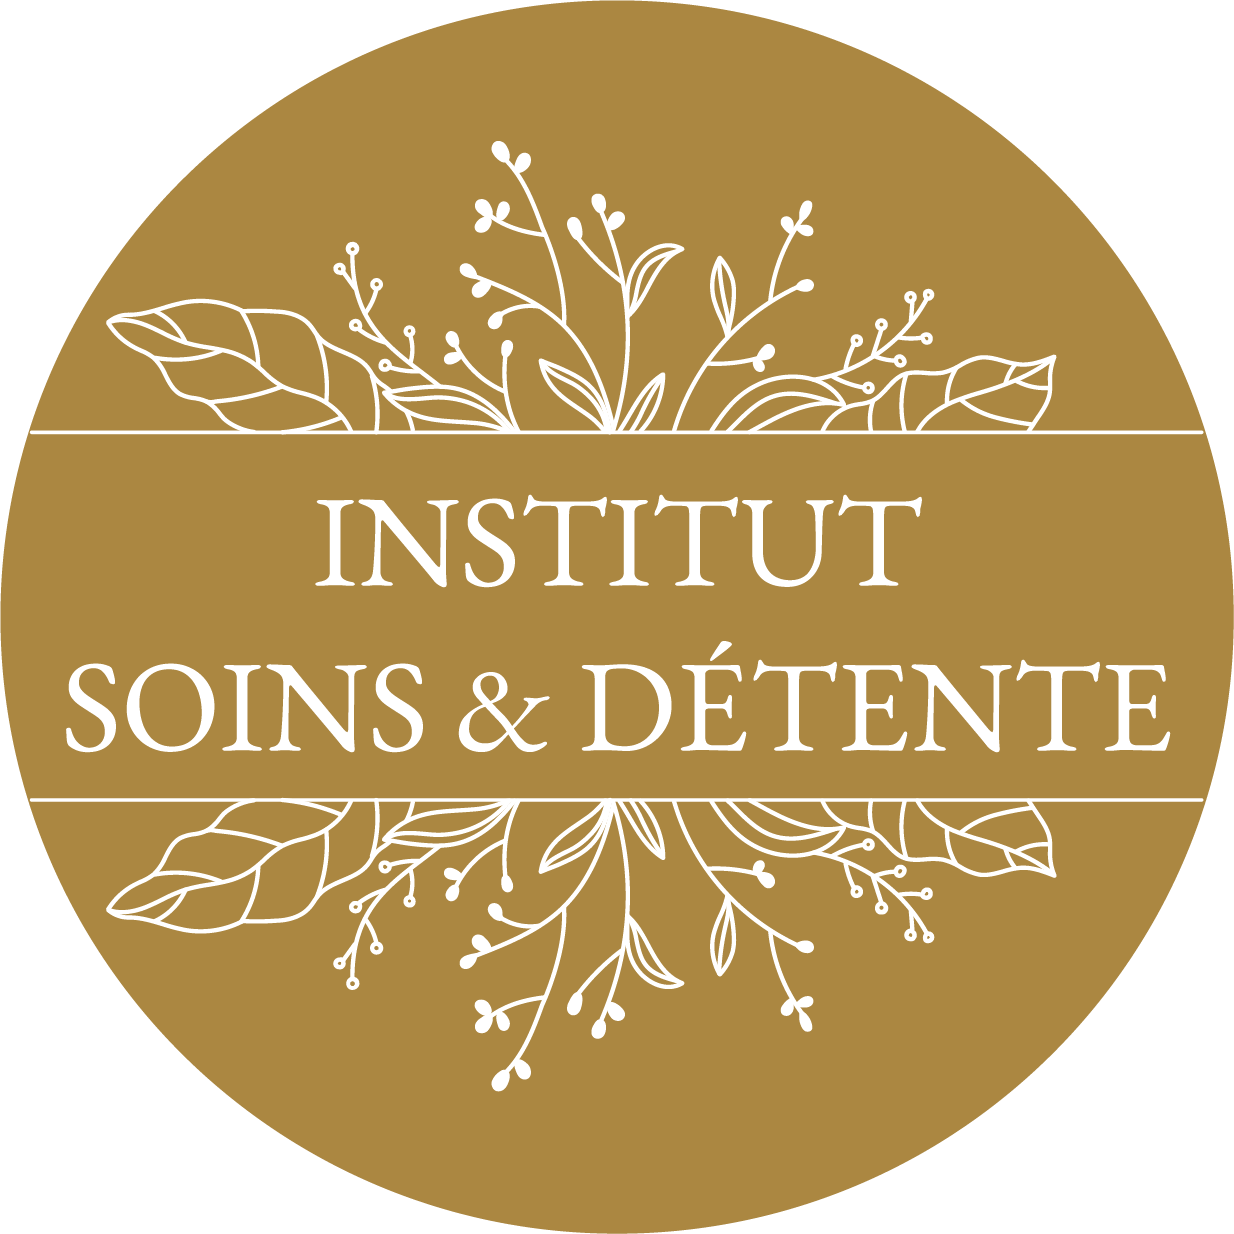 Institut soins et détente - Logo blanc Rond